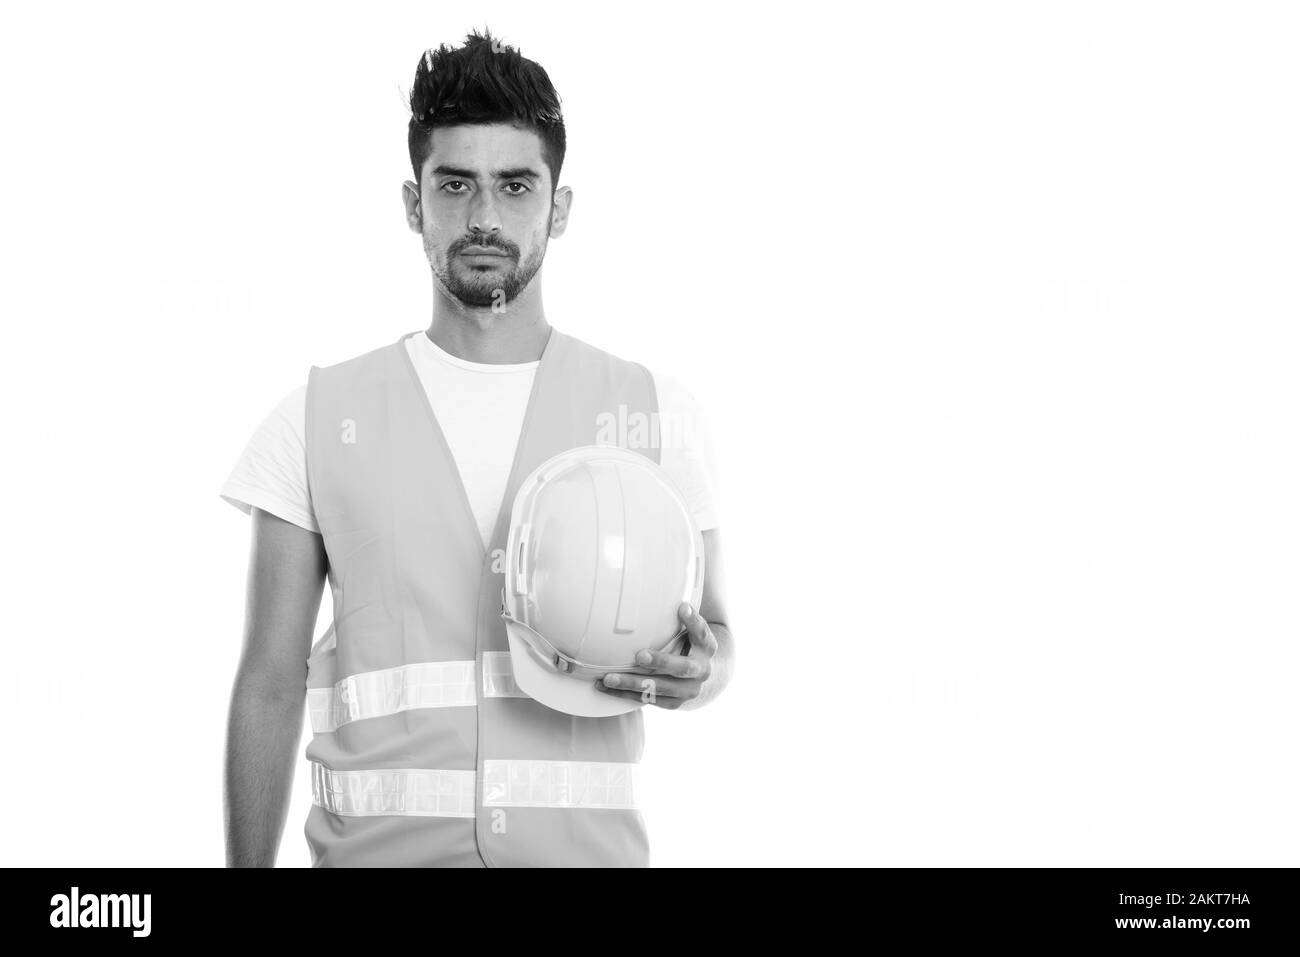 Portrait de jeune homme persan construction worker holding hard hat Banque D'Images